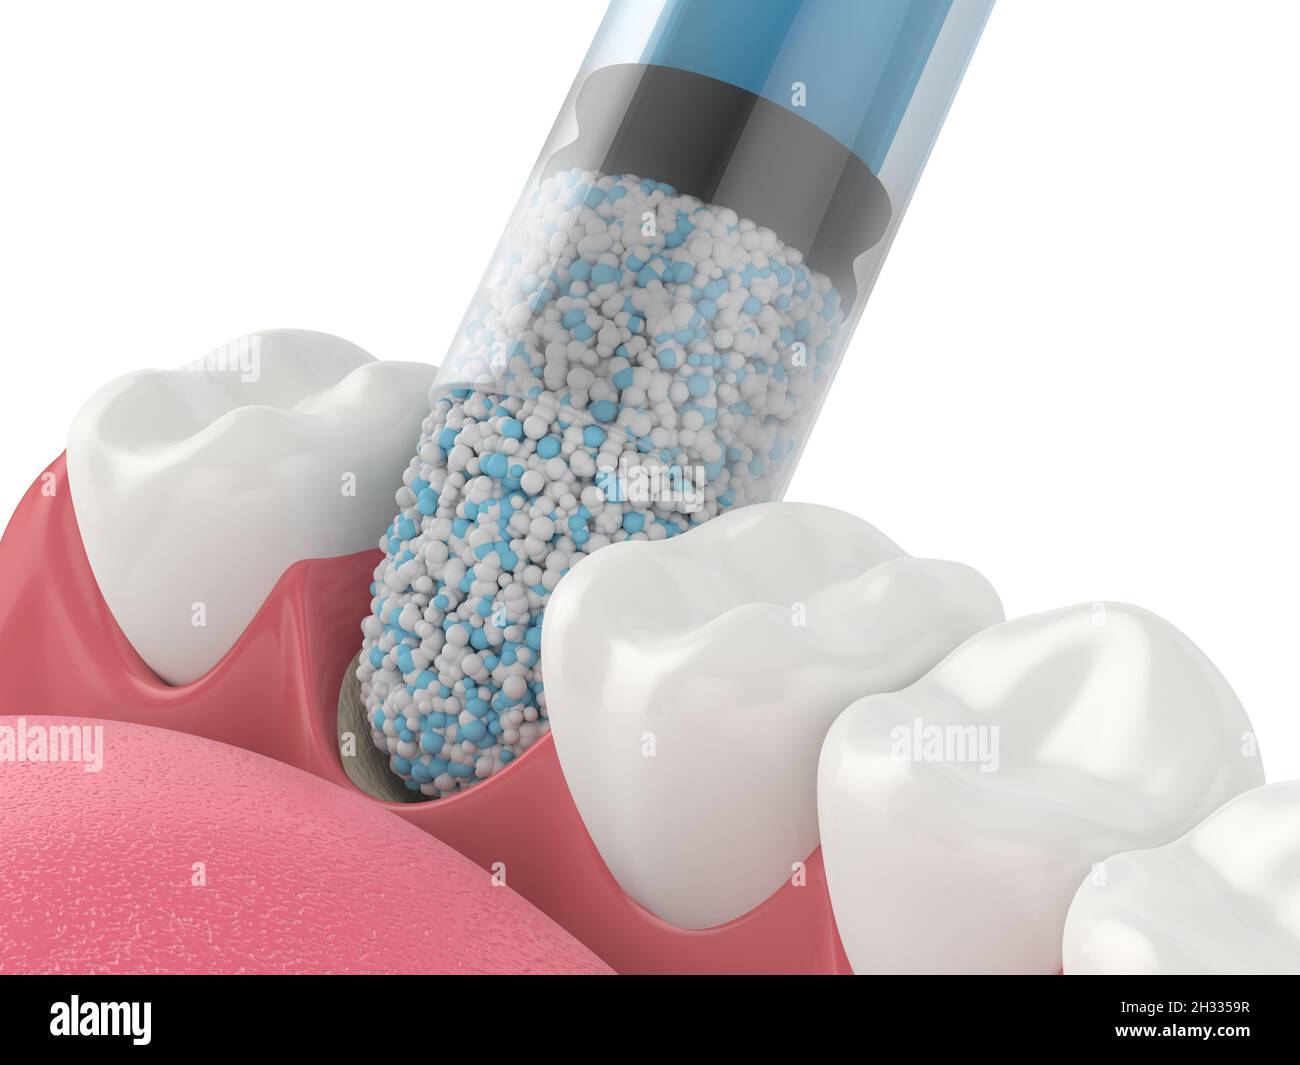 Rendu 3D de la greffe osseuse dentaire avec application biomatérienne osseuse dentaire sur fond blanc.Concept de procédure d'augmentation osseuse de la mâchoire. Banque D'Images